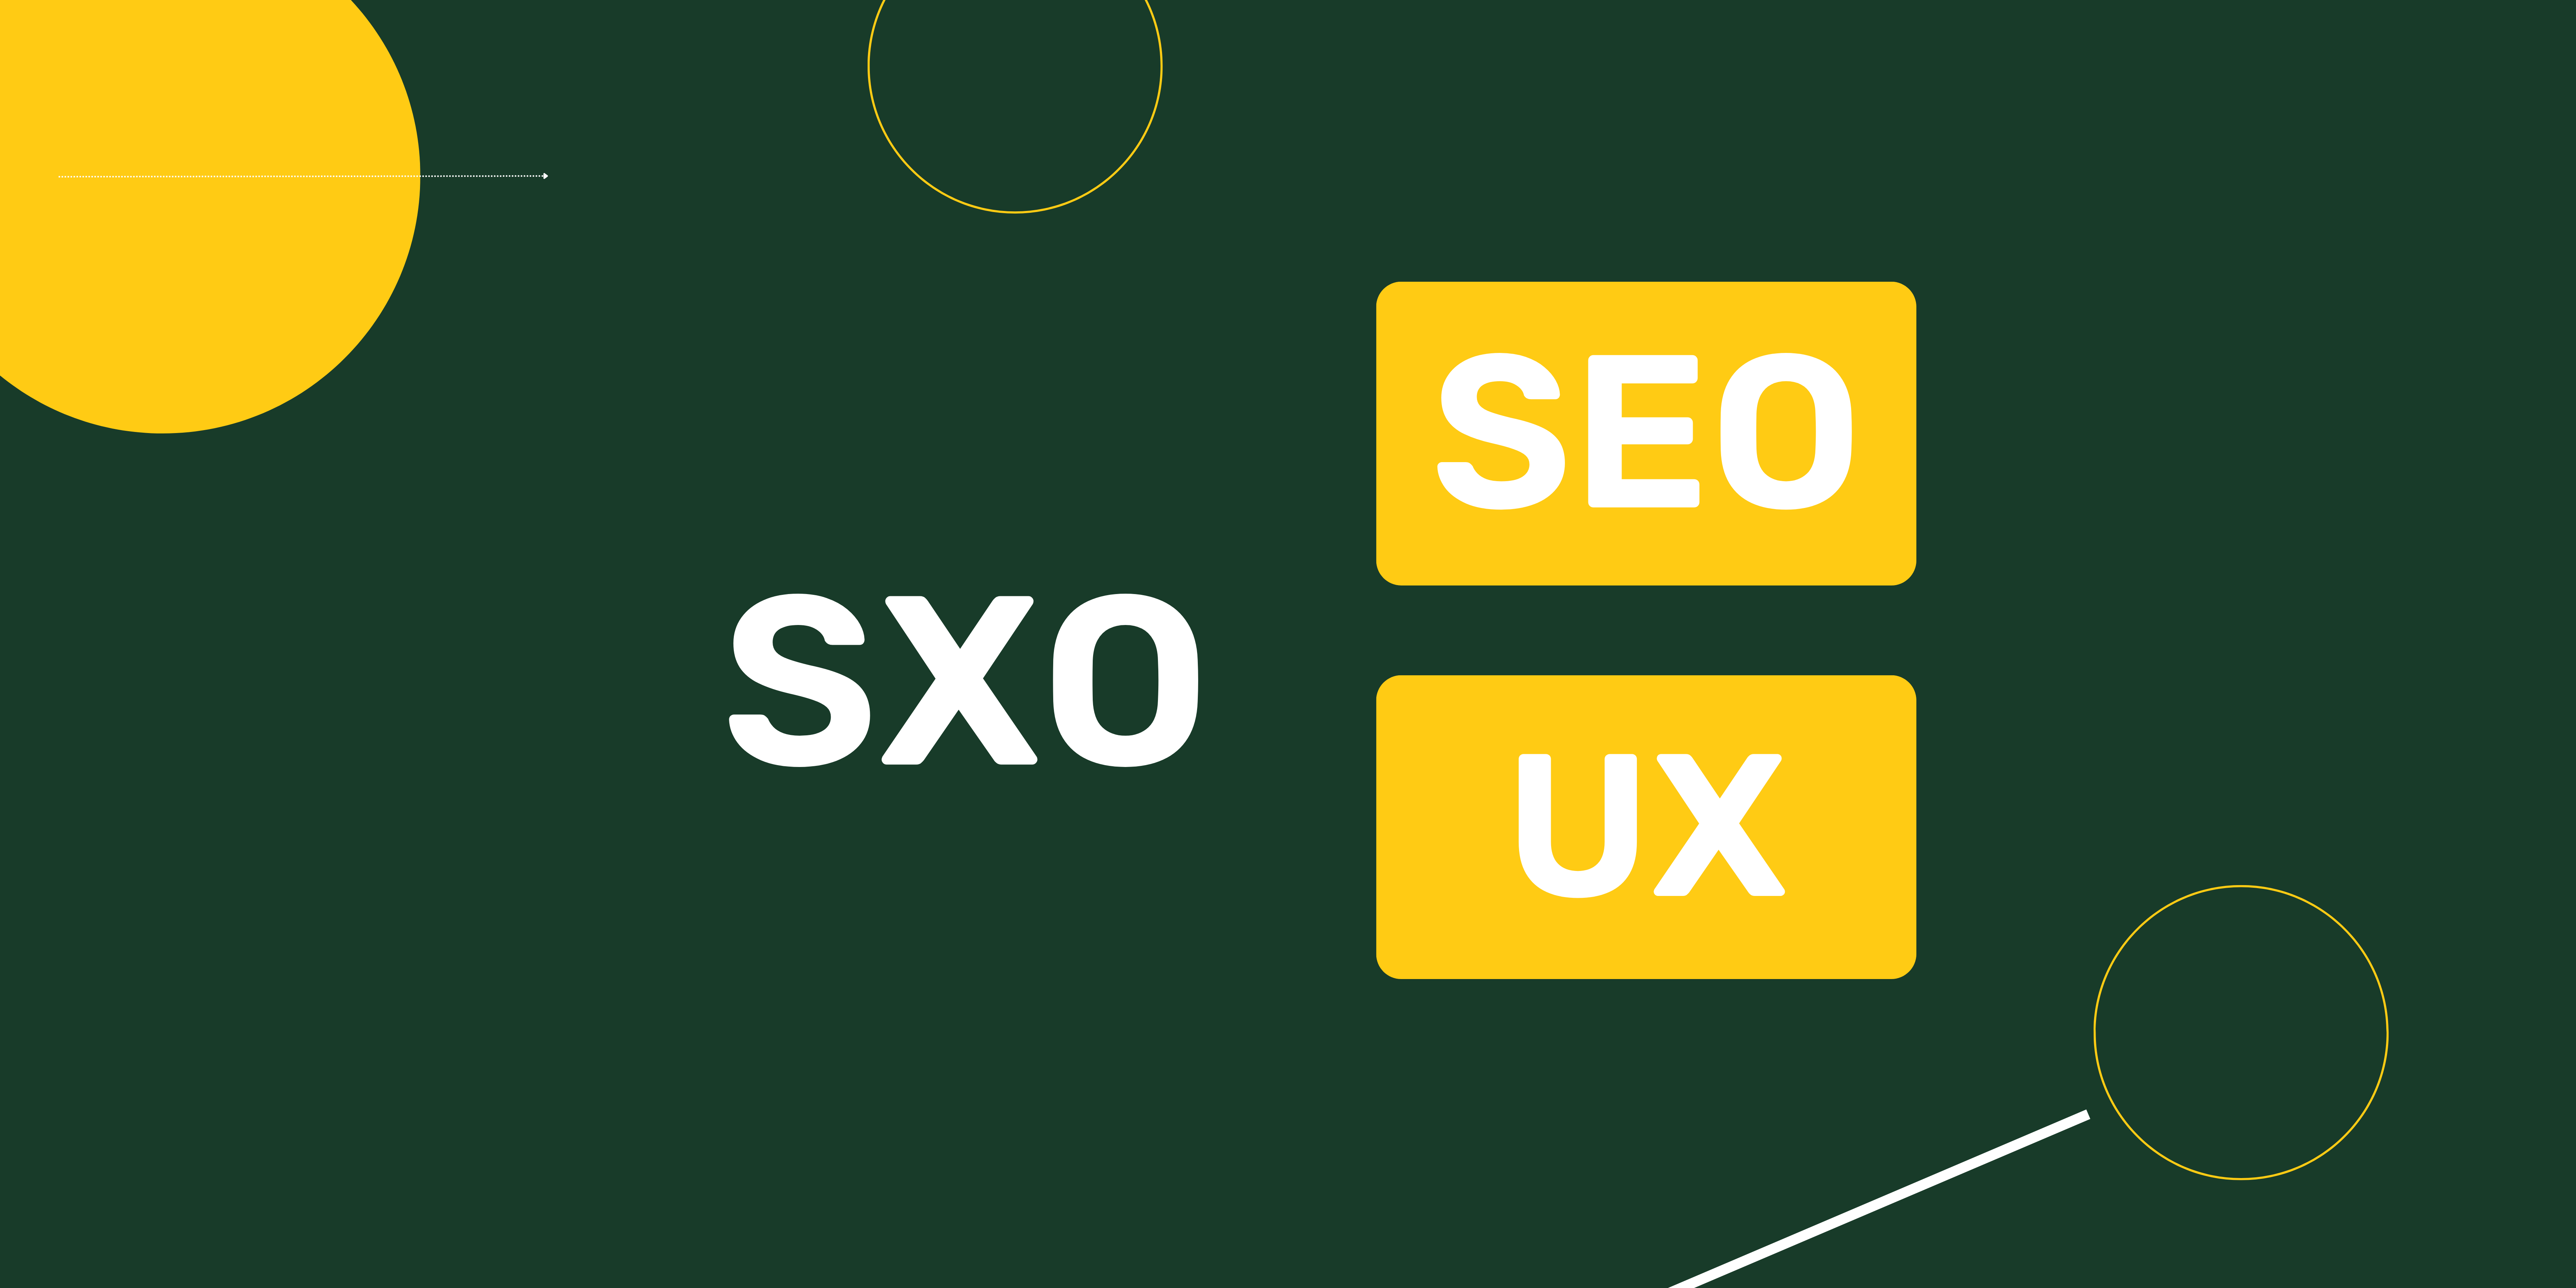 SXO = SEO + UX